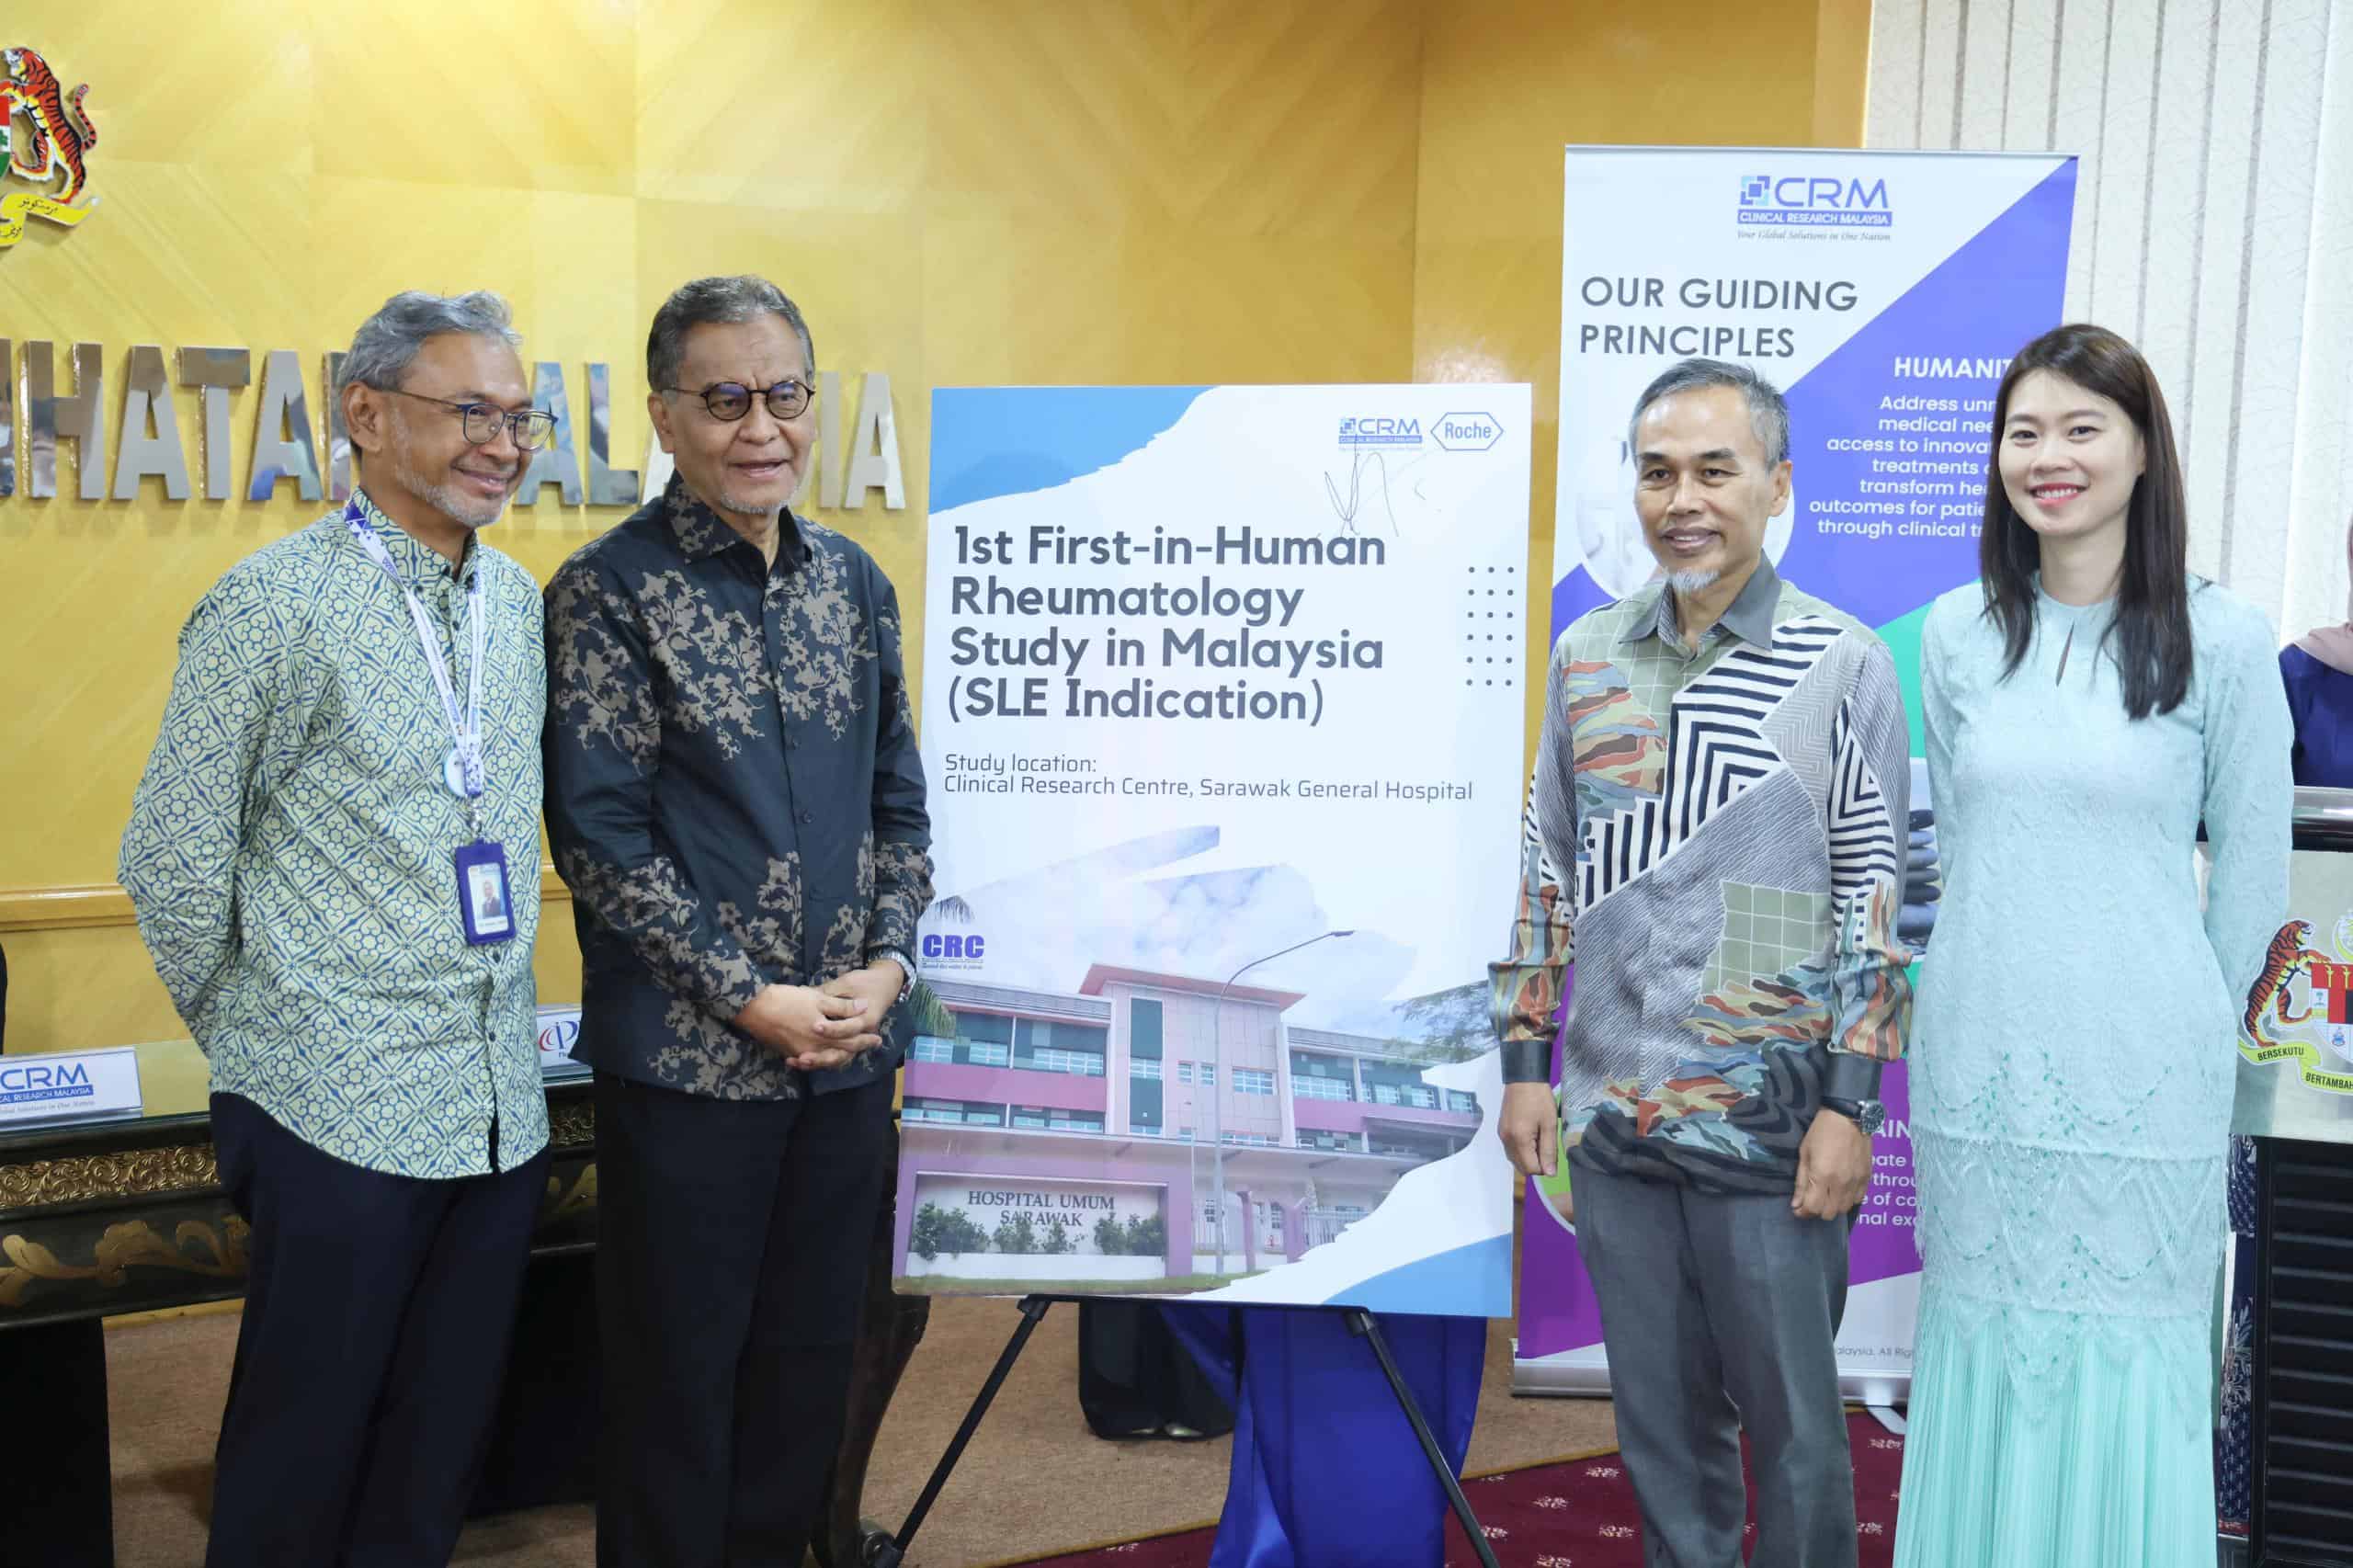 Roche Pharmaceuticals Memilih Hospital Umum Sarawak sebagai Lokasi Global Penyelidikan Klinikal First-in-Human